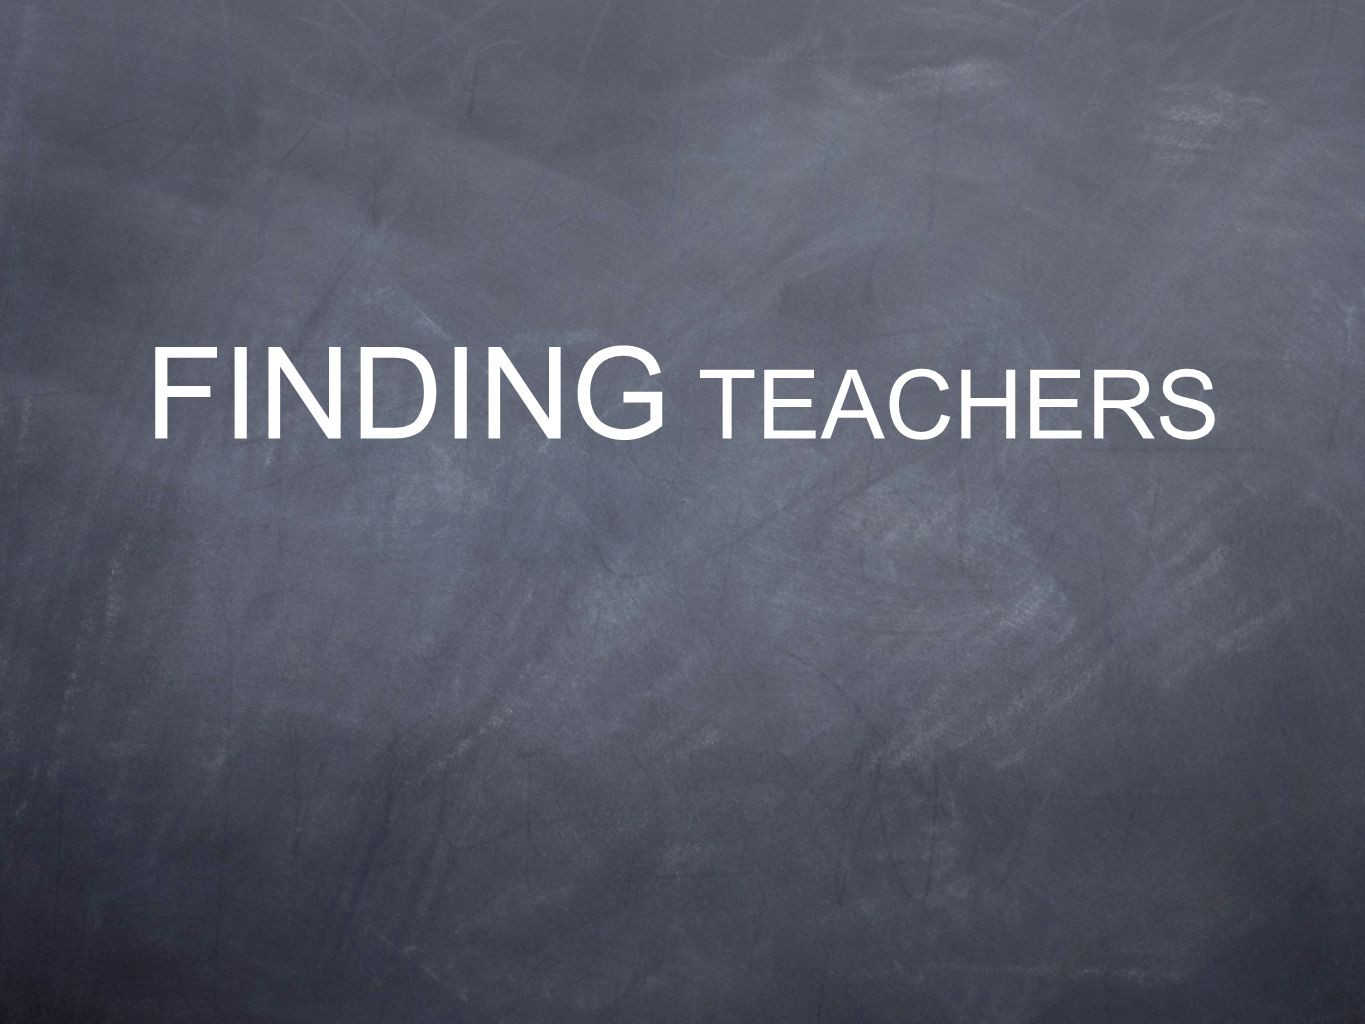 FINDING TEACHERS